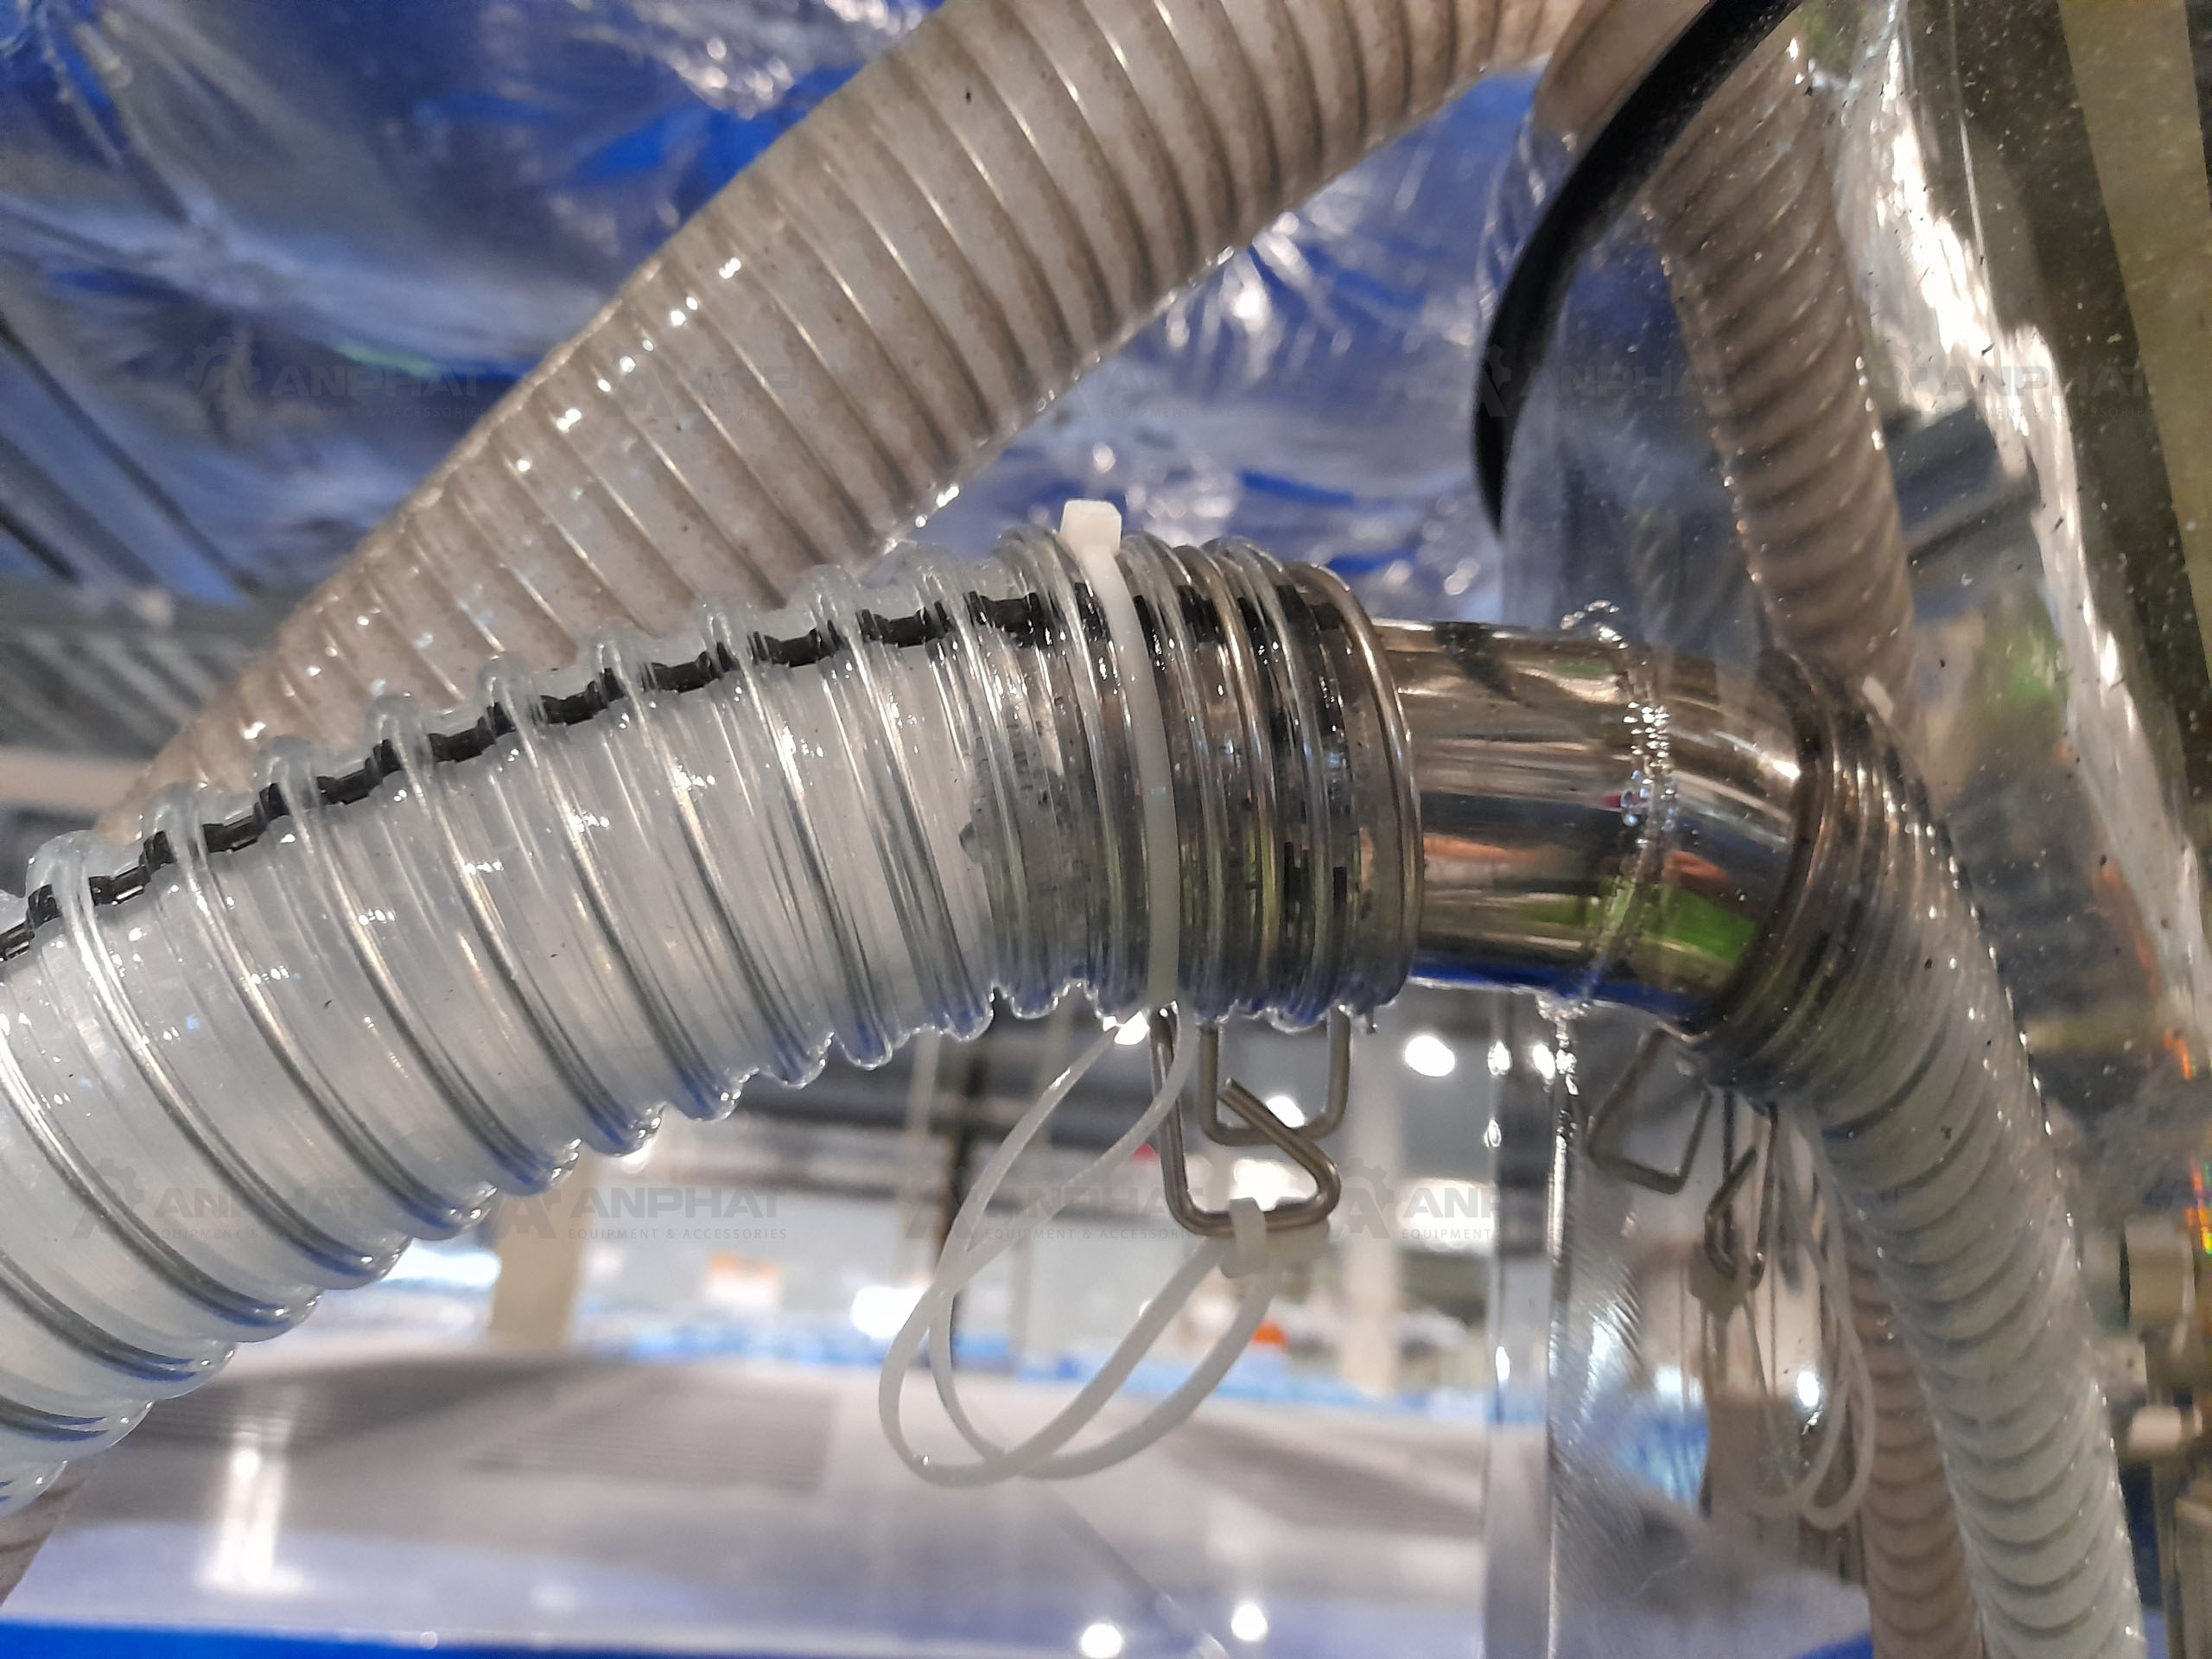 Giải pháp ống dẫn cải thiện tĩnh điện tại Công ty TNHH Công nghệ MUTO Hà Nội